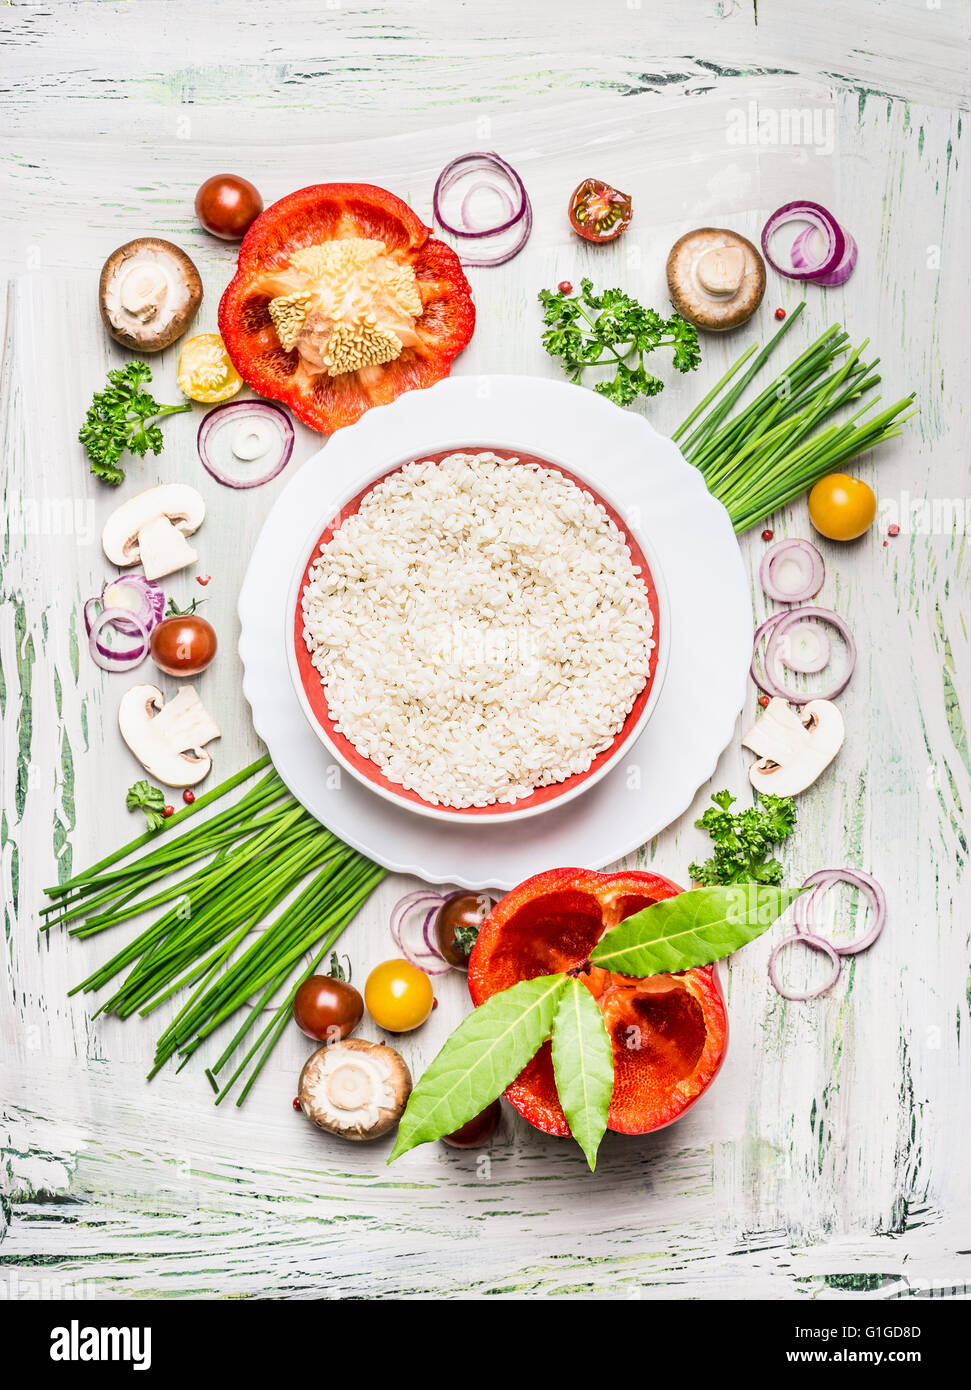 Risotto-Reis-Gericht und verschiedene Gemüse und Gewürz-Zutaten für leckere vegetarische Küche auf leichte rustikal aus Holz Stockfoto